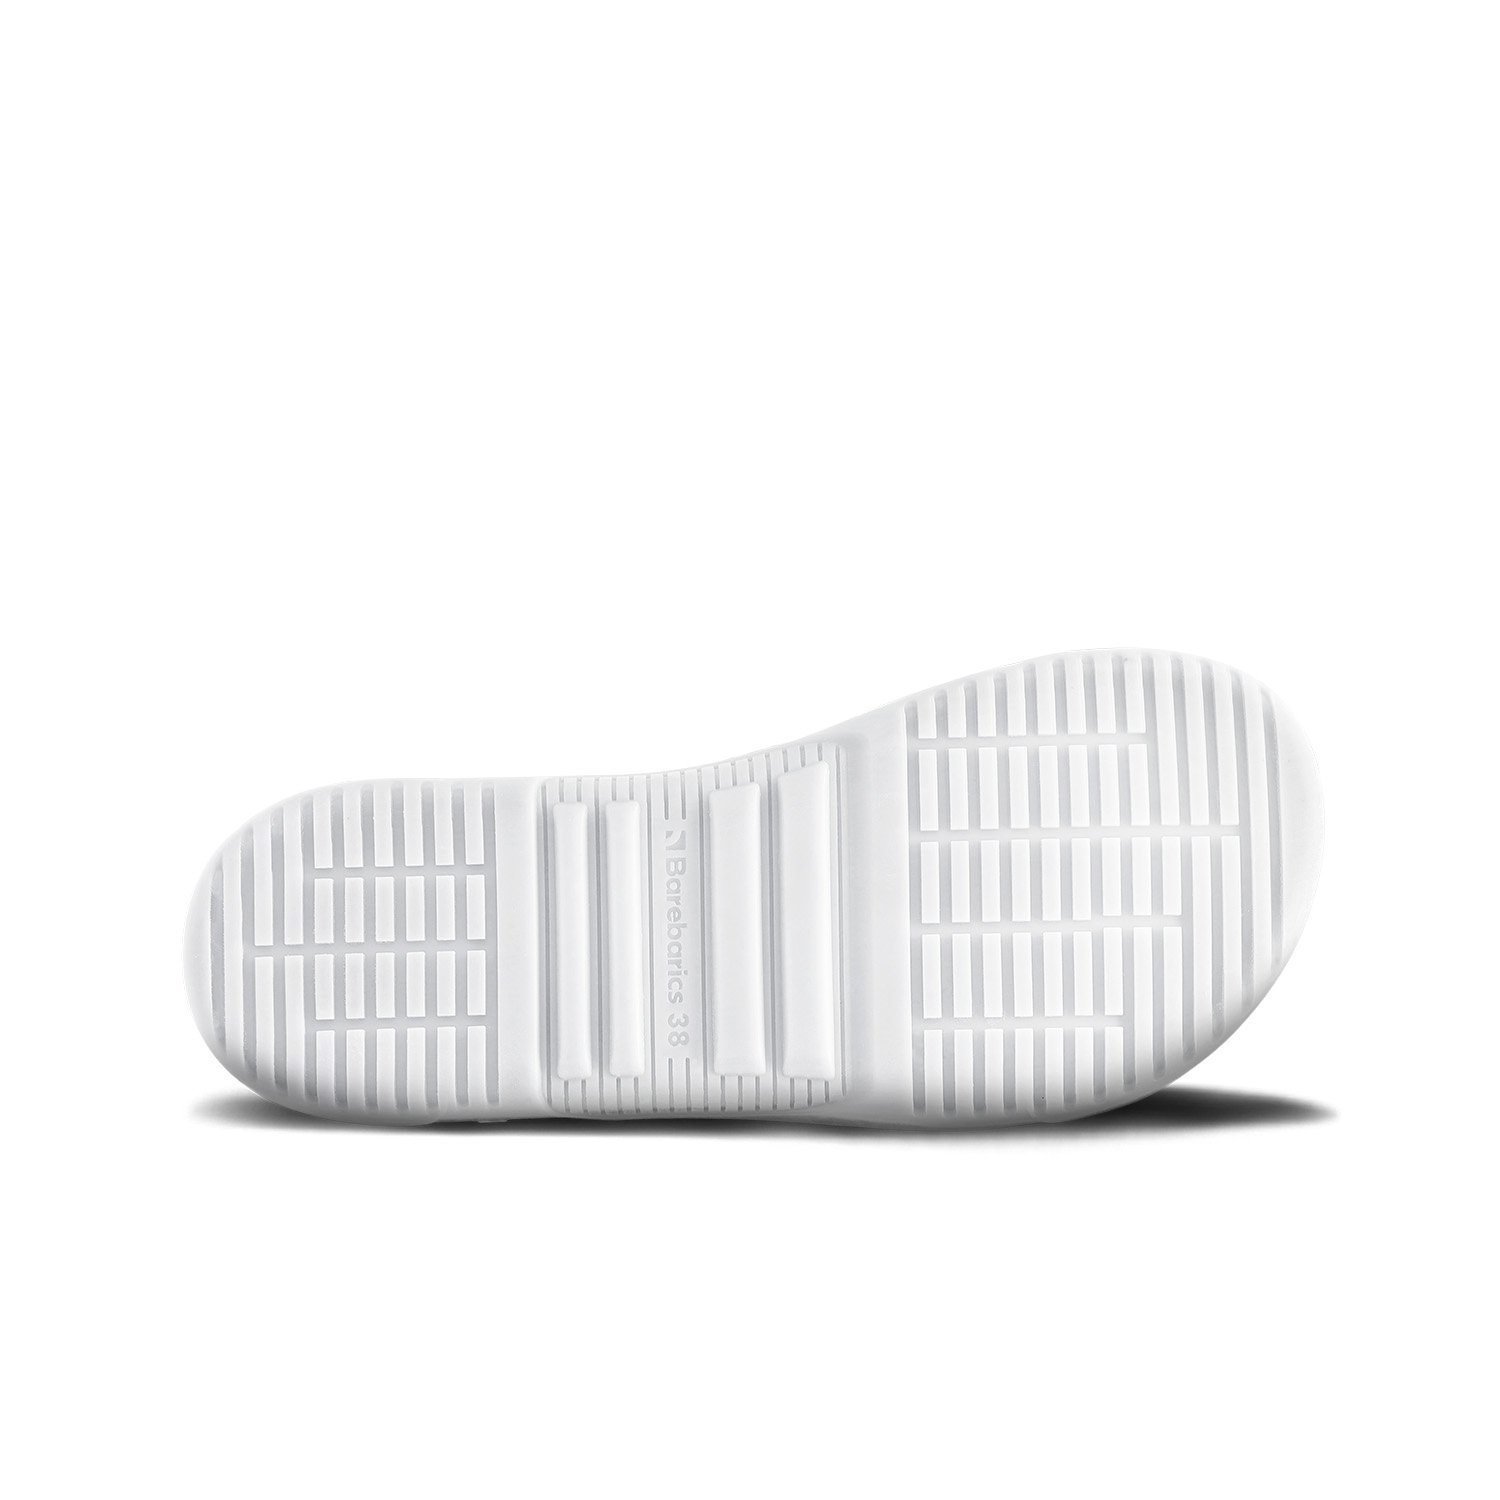 Sneakers Barefoot Barebarics - Zing - White & Black